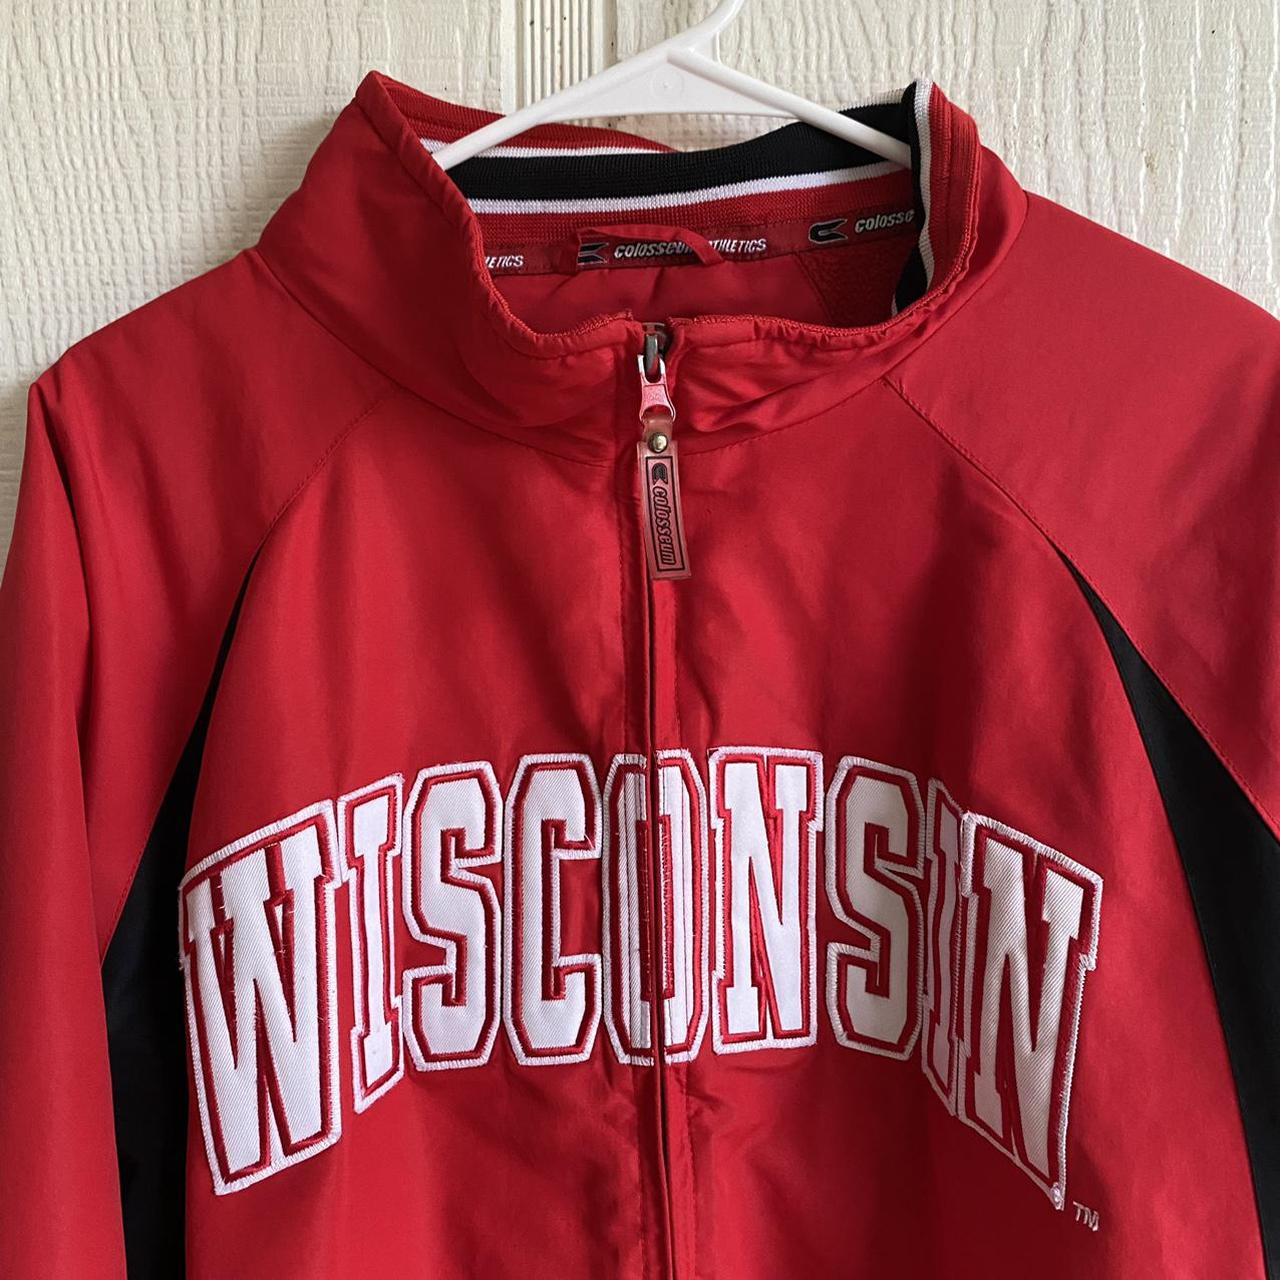 Product Image 2 - Wisconsin university jacket
FREE SHIPPING 
Has